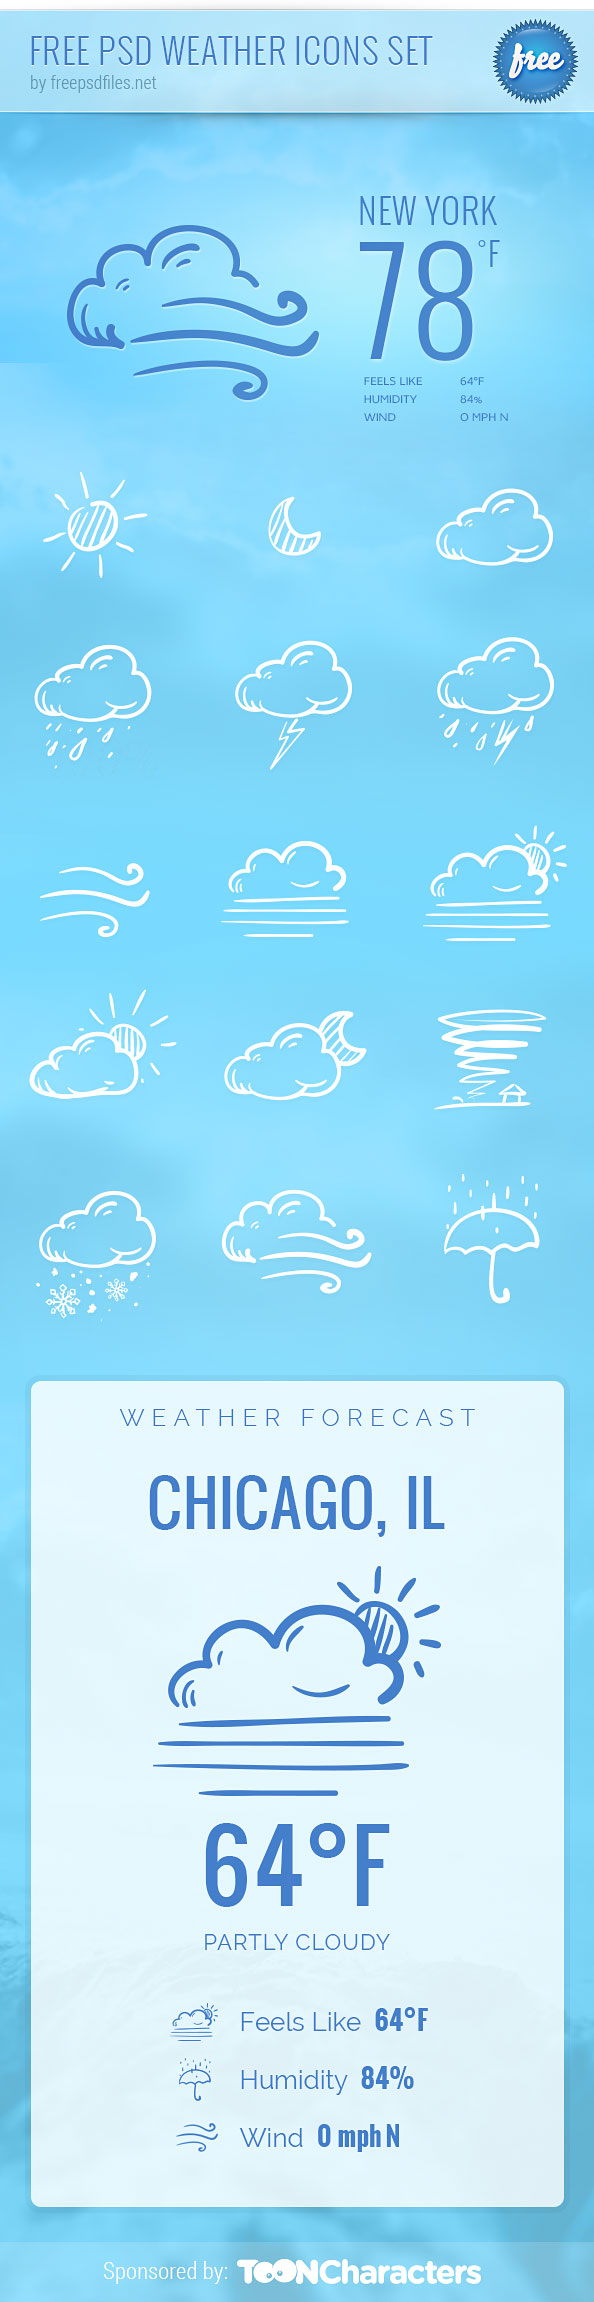 Free PSD Weather Icon Set